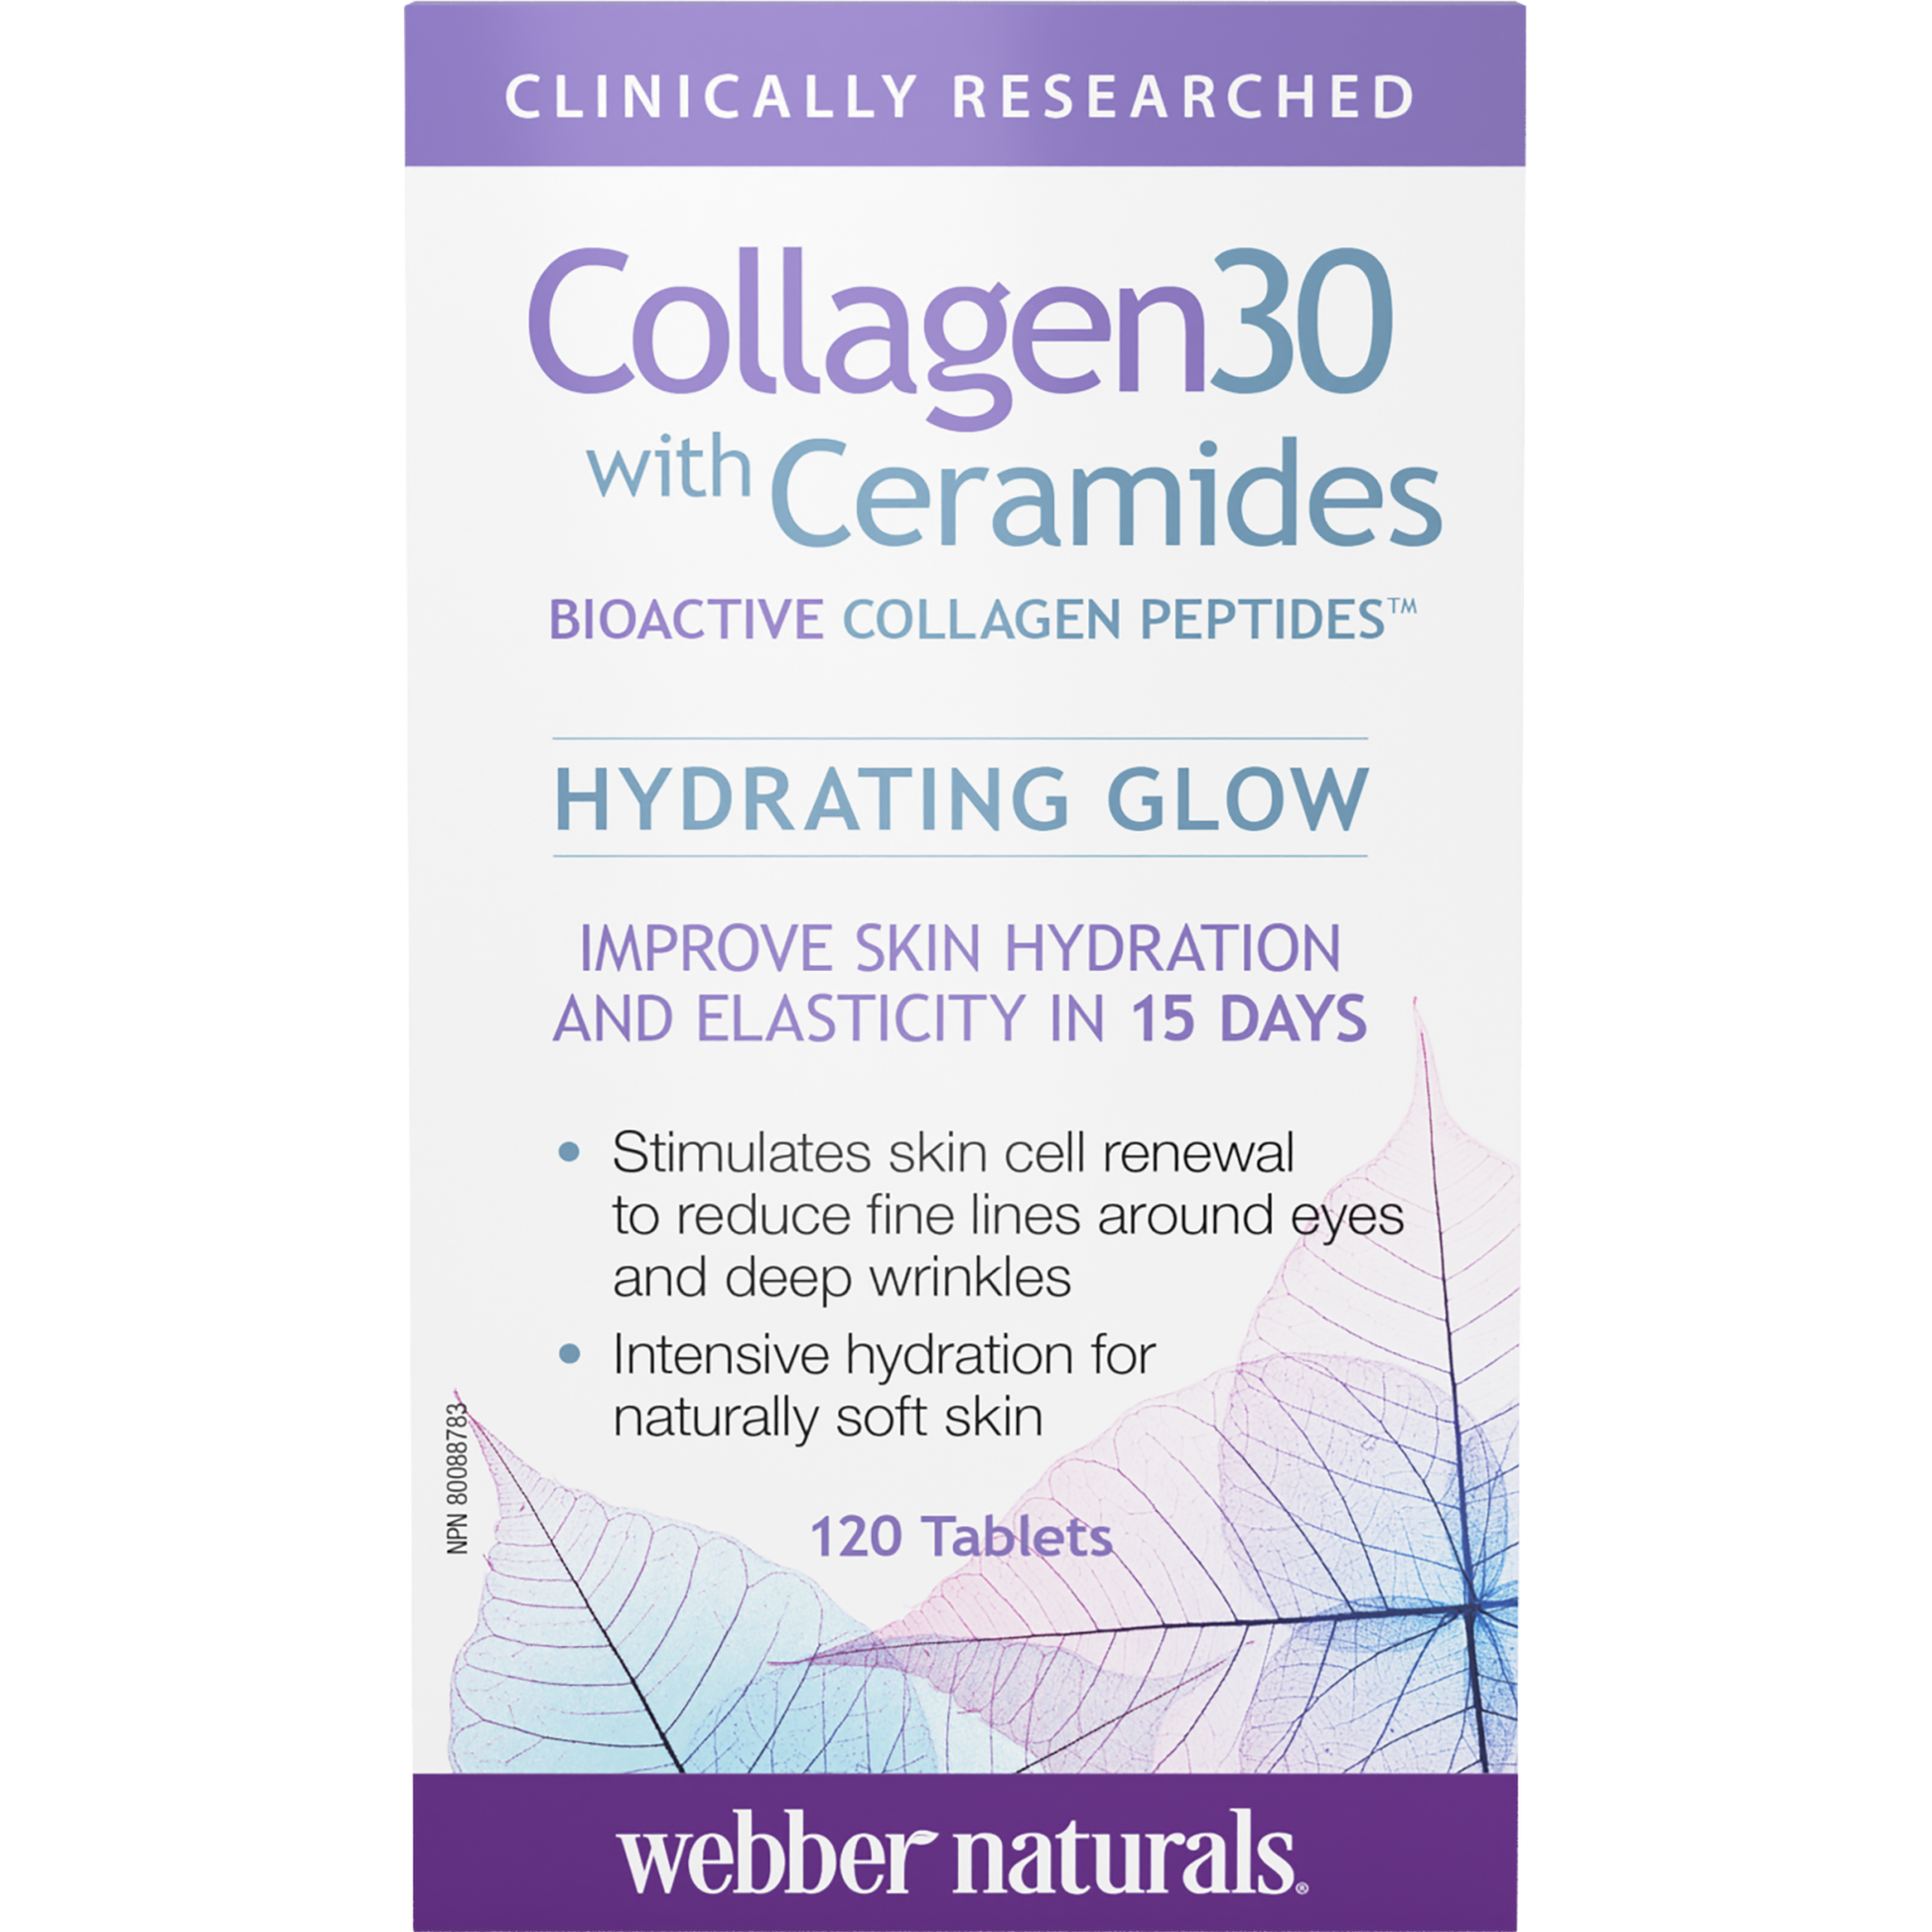 Collagen30® with Ceramides Bioactive Collagen Peptides for Webber Naturals|v|hi-res|WN3669